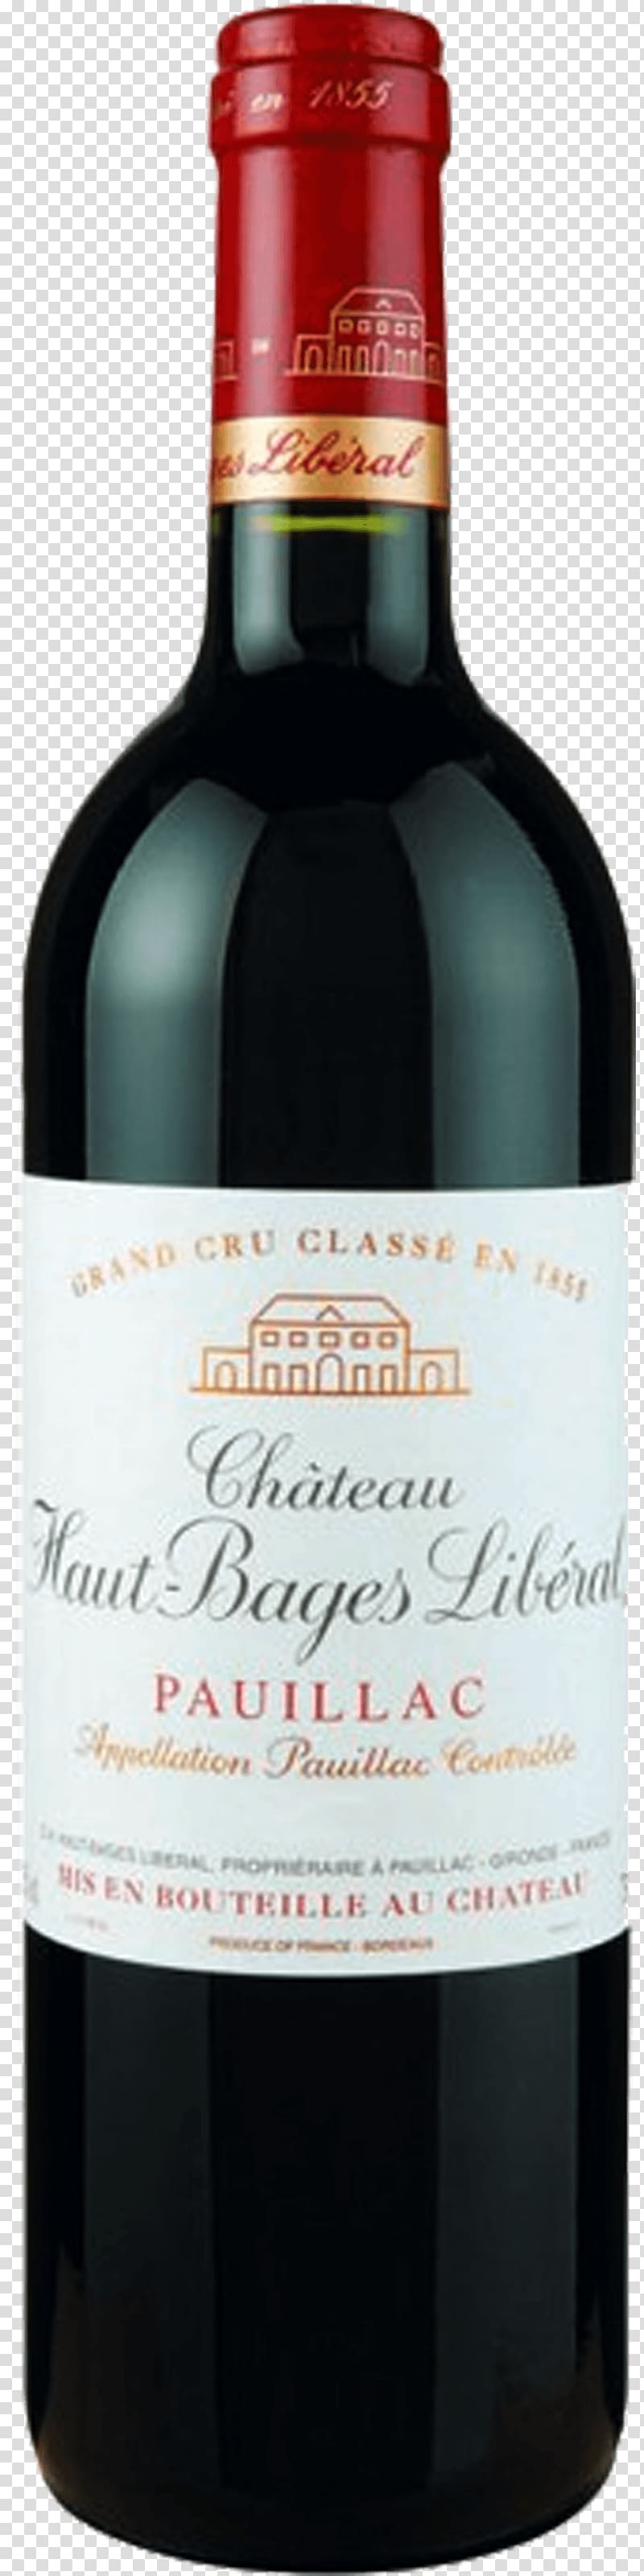 Château Haut-Brion Saint-Estèphe AOC Saint-Émilion AOC Wine Cabernet Sauvignon, wine transparent background PNG clipart